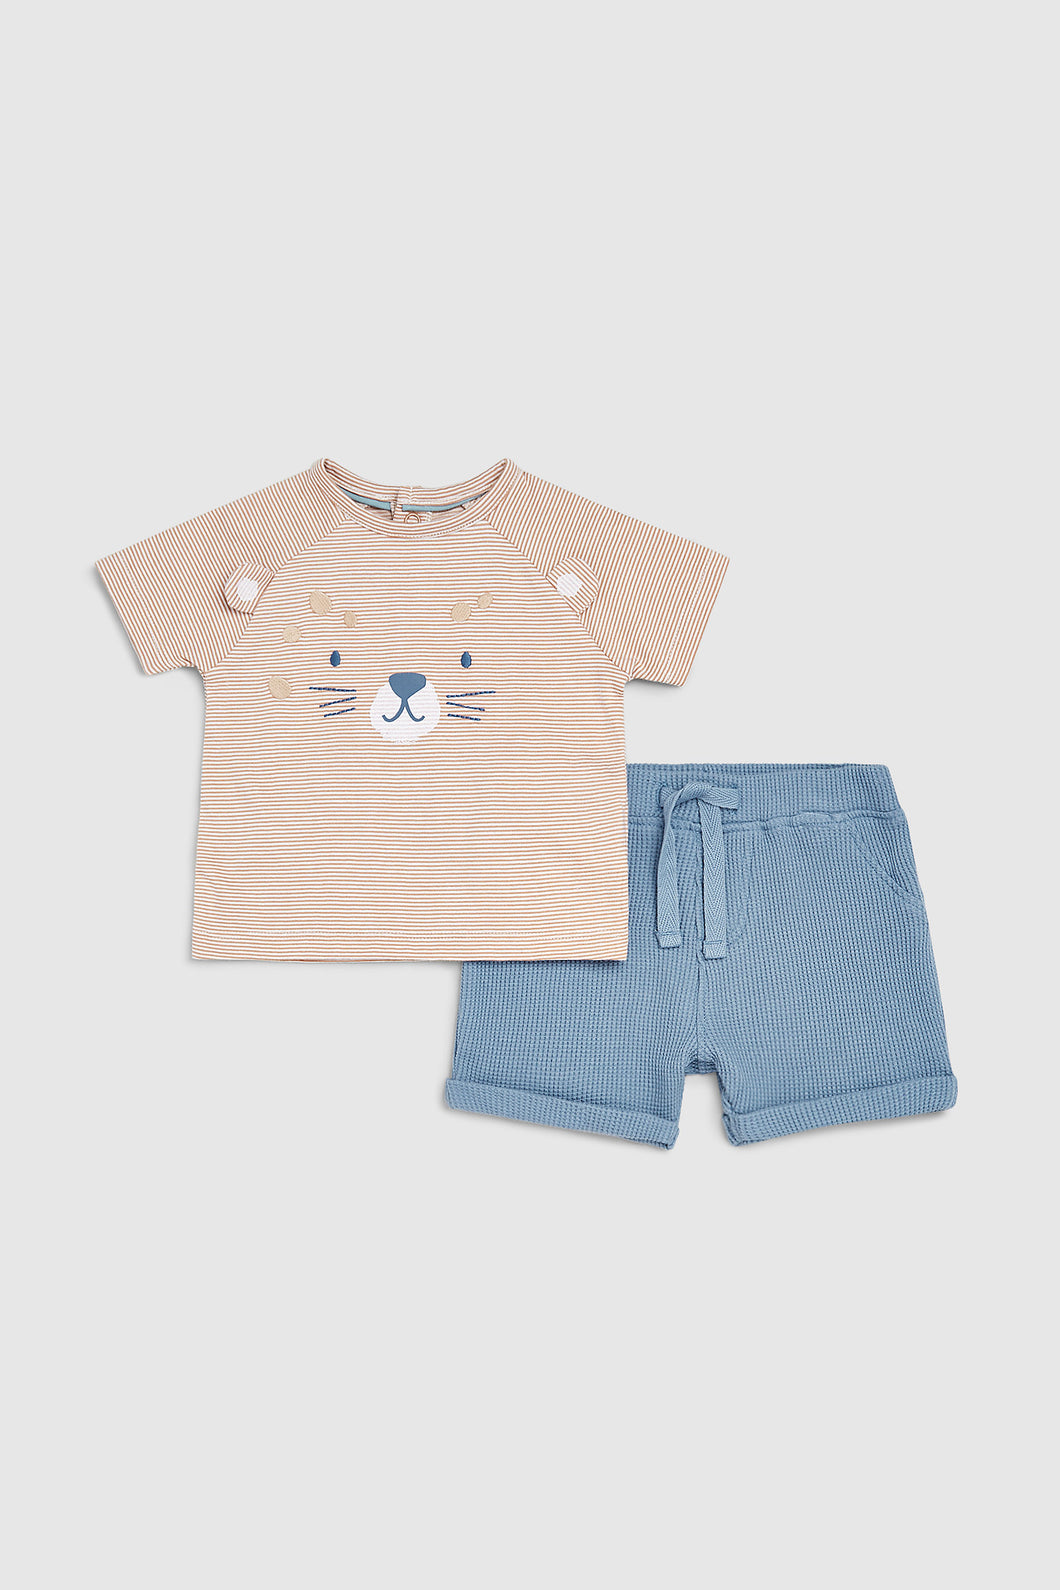 Mothercare Jungle T-Shirt And Shorts Set